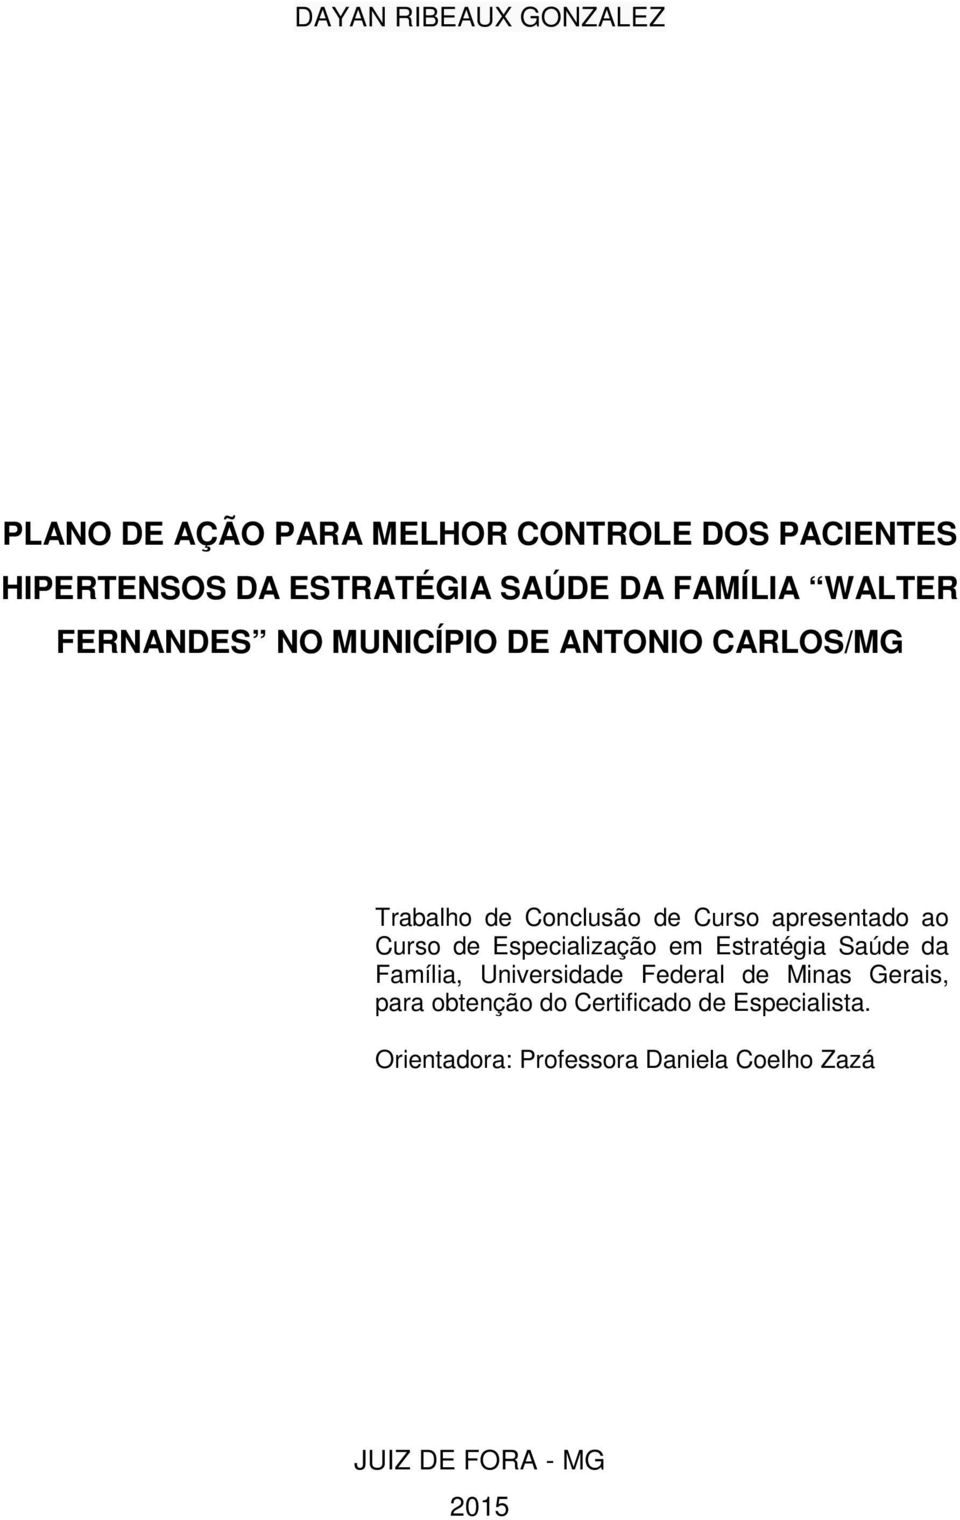 ao Curso de Especialização em Estratégia Saúde da Família, Universidade Federal de Minas Gerais, para